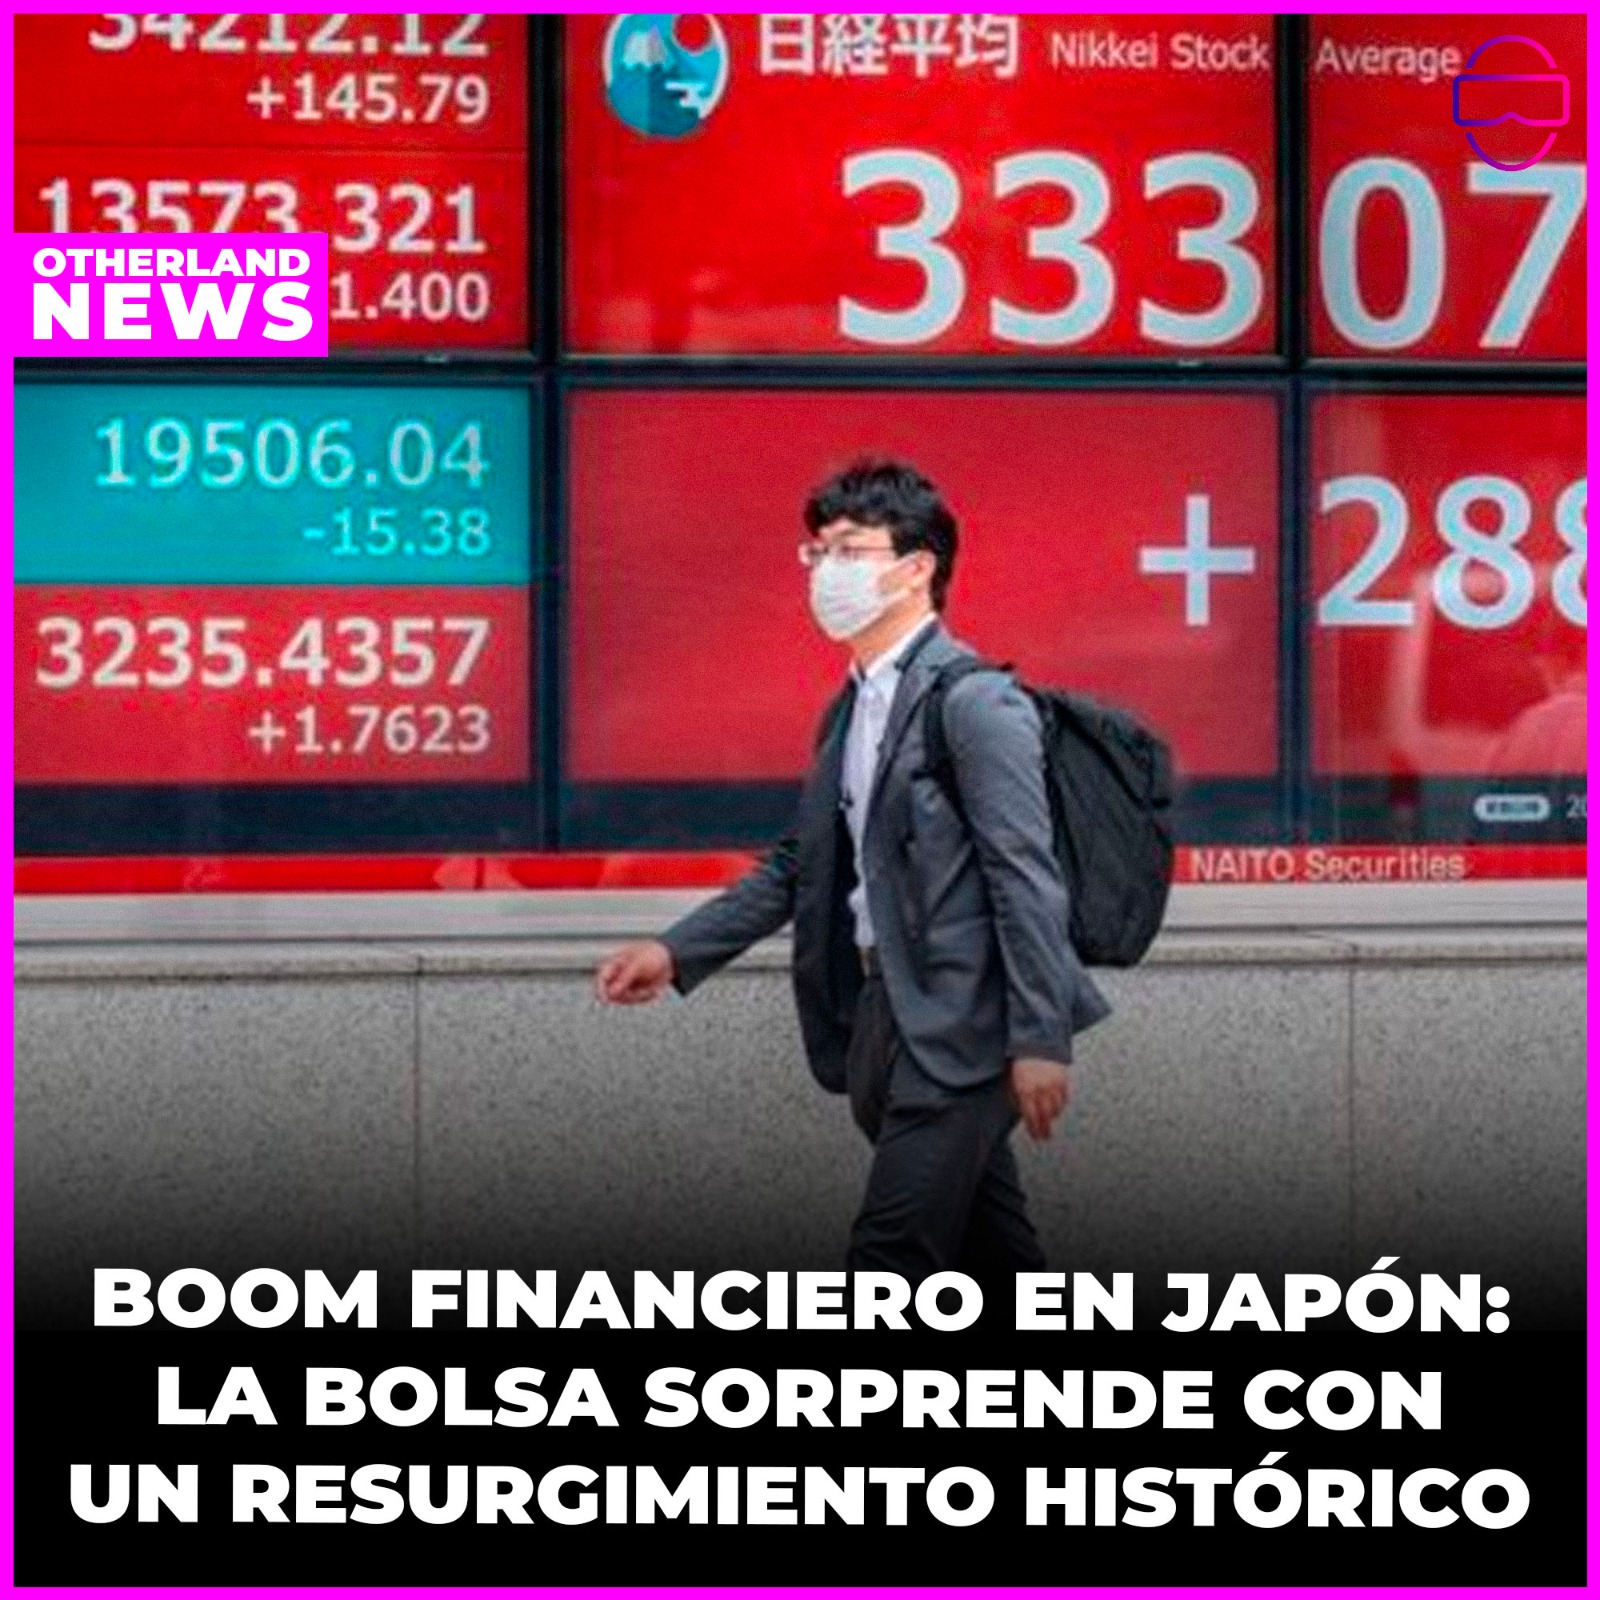 Otherland : Boom financiero en Japón: la bolsa sorprende con un resurgimiento histórico